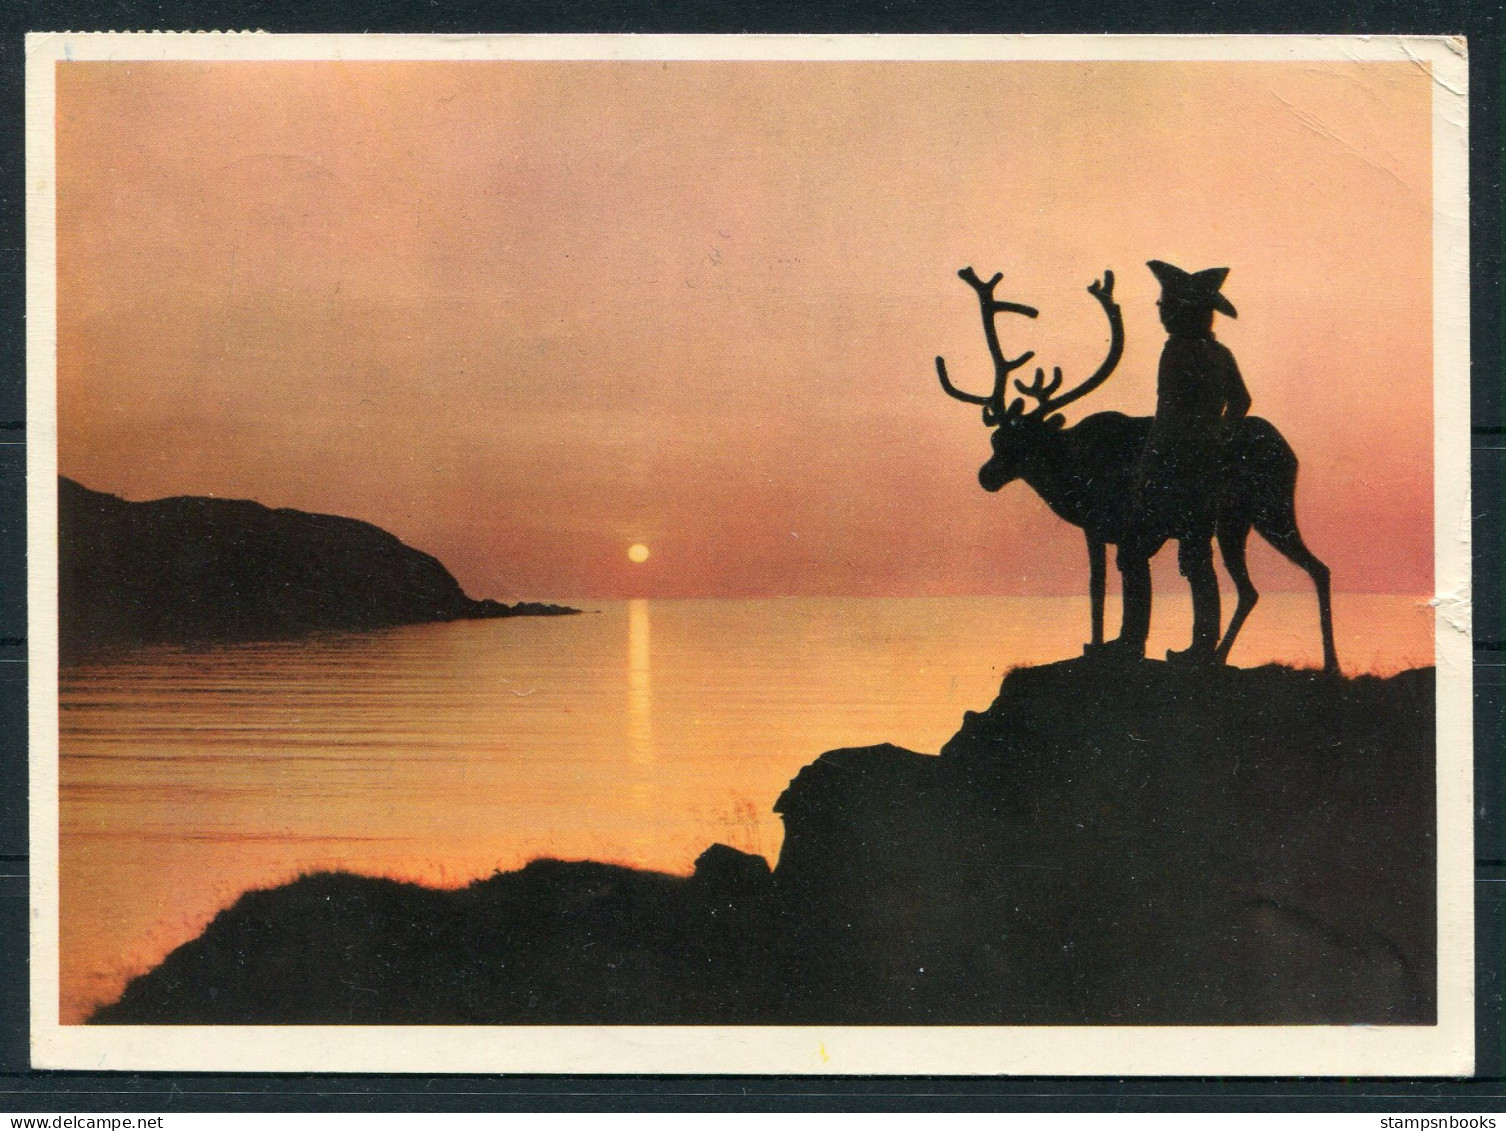 1960 Norway Arctic Circle, Polarsirkelen Postcard - Holland. Nordkap 35ore + Svalbard Jan Mayen I.G.Y. Polar Franking - Briefe U. Dokumente